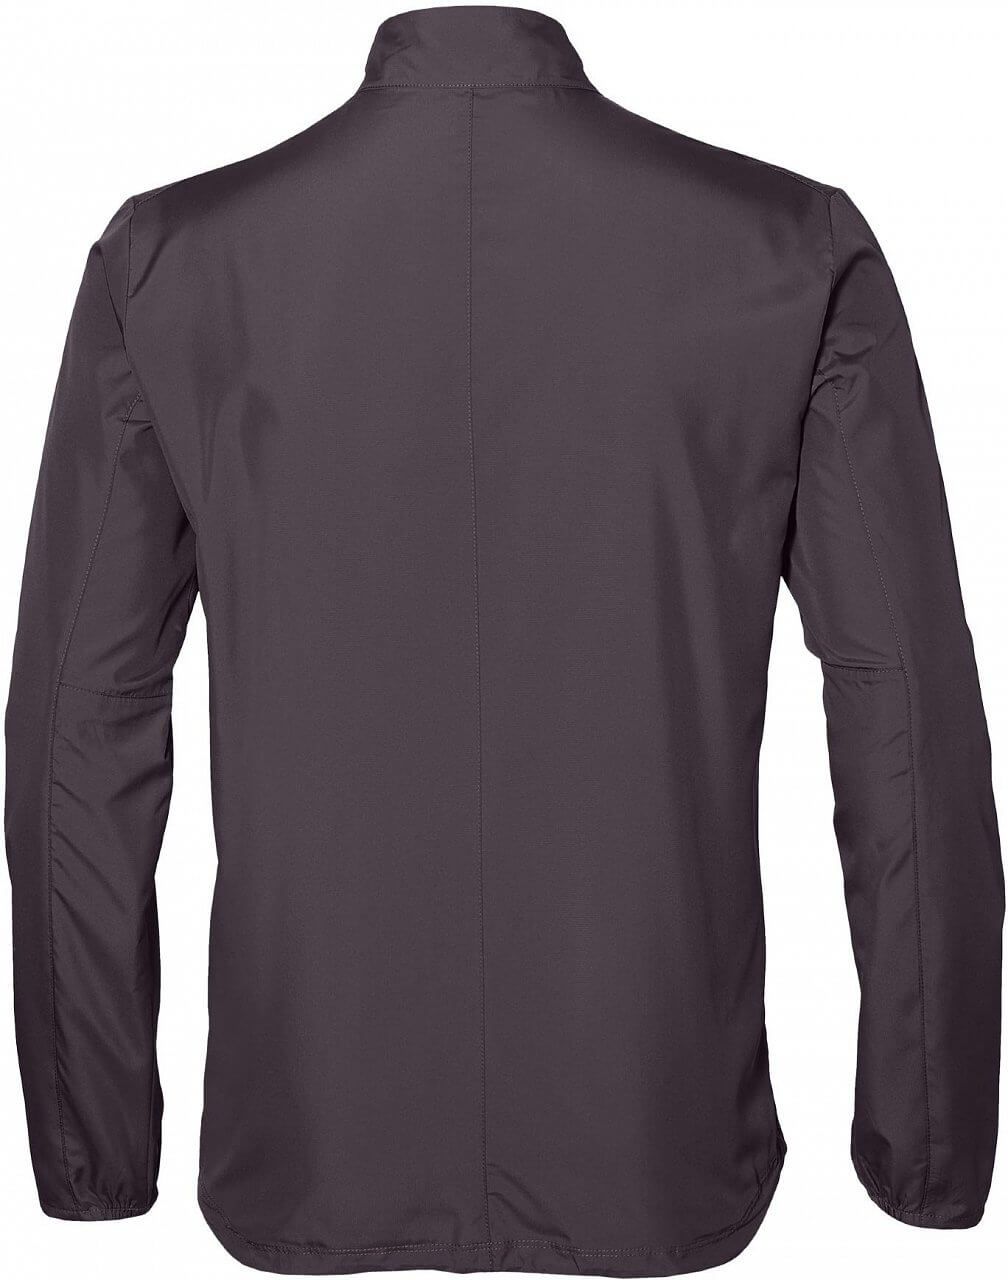   Asics Silver Jacket, : -. 2011A024-021.  XL (52/54)